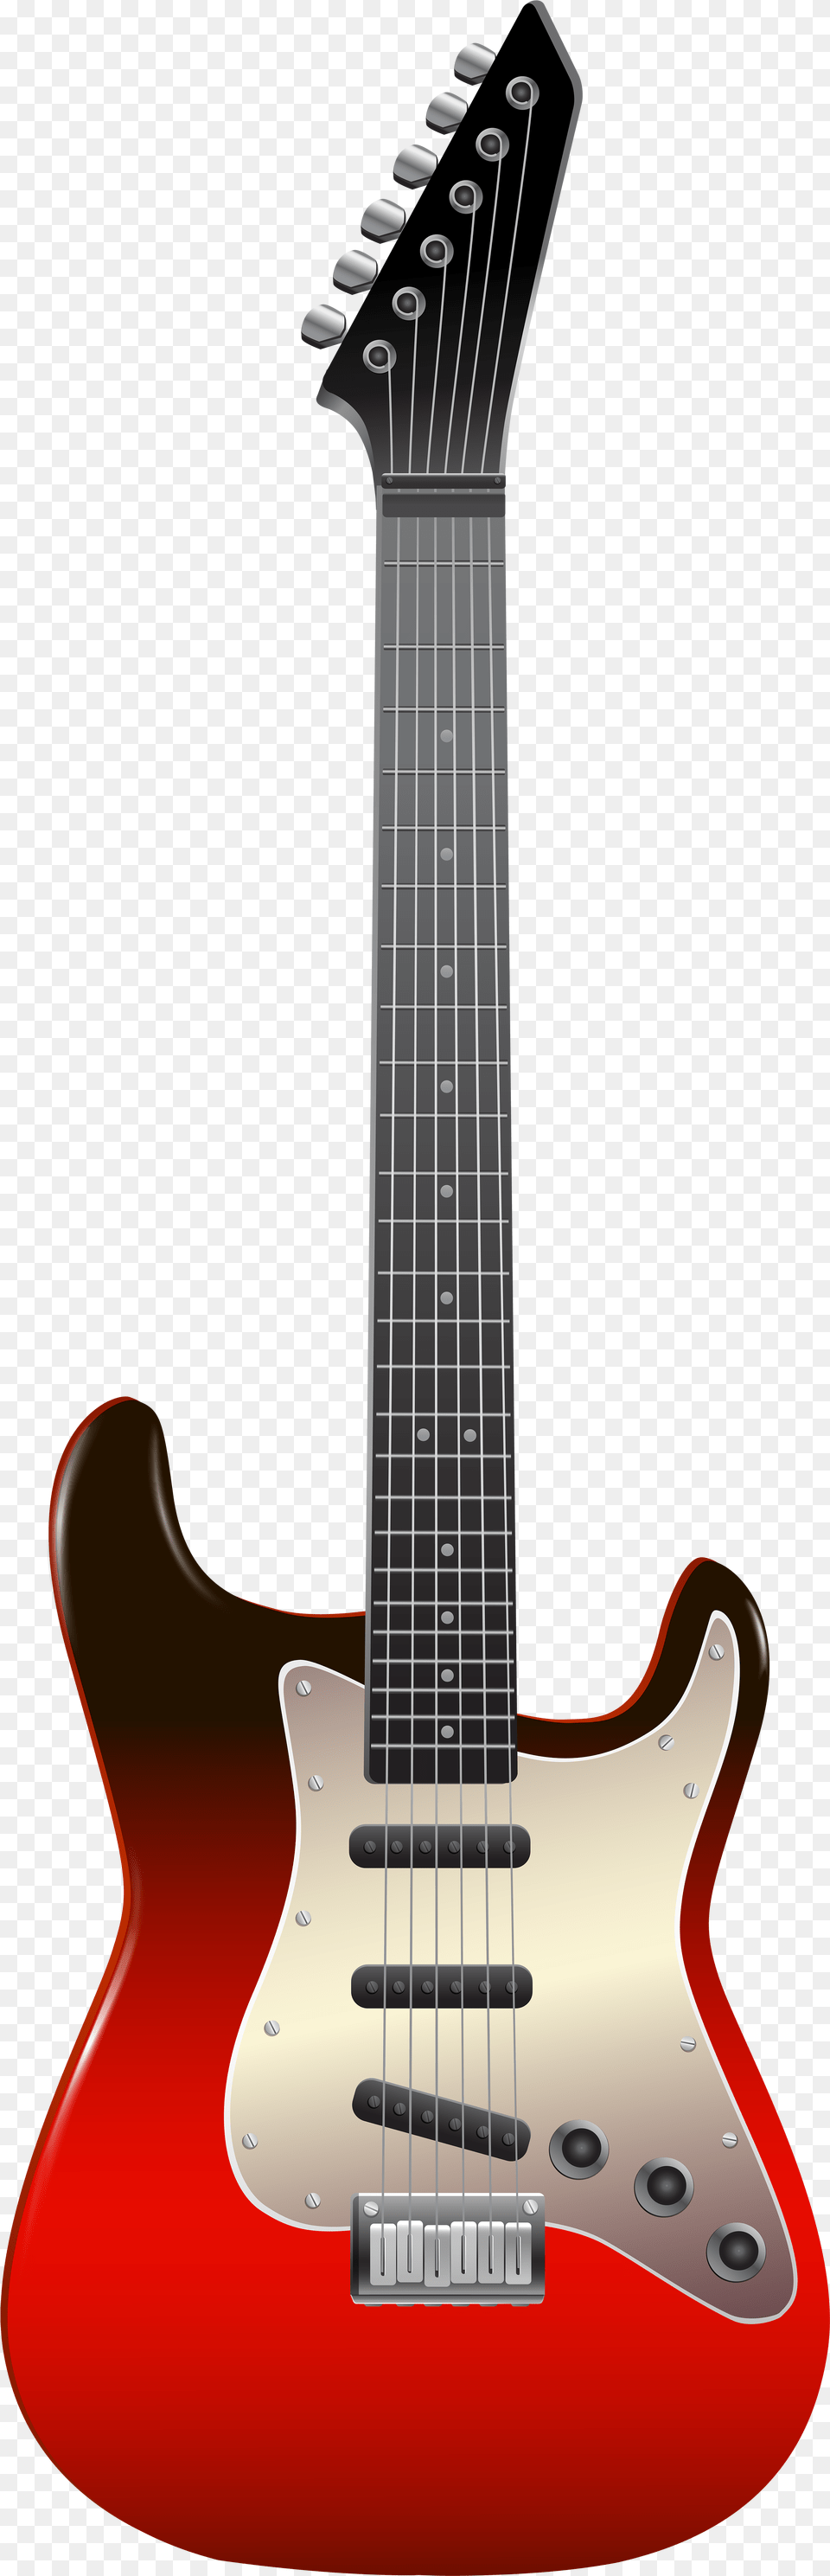 Transparent Guitar Clip Art Guitar For Picsart, Electric Guitar, Musical Instrument, Bass Guitar Png Image